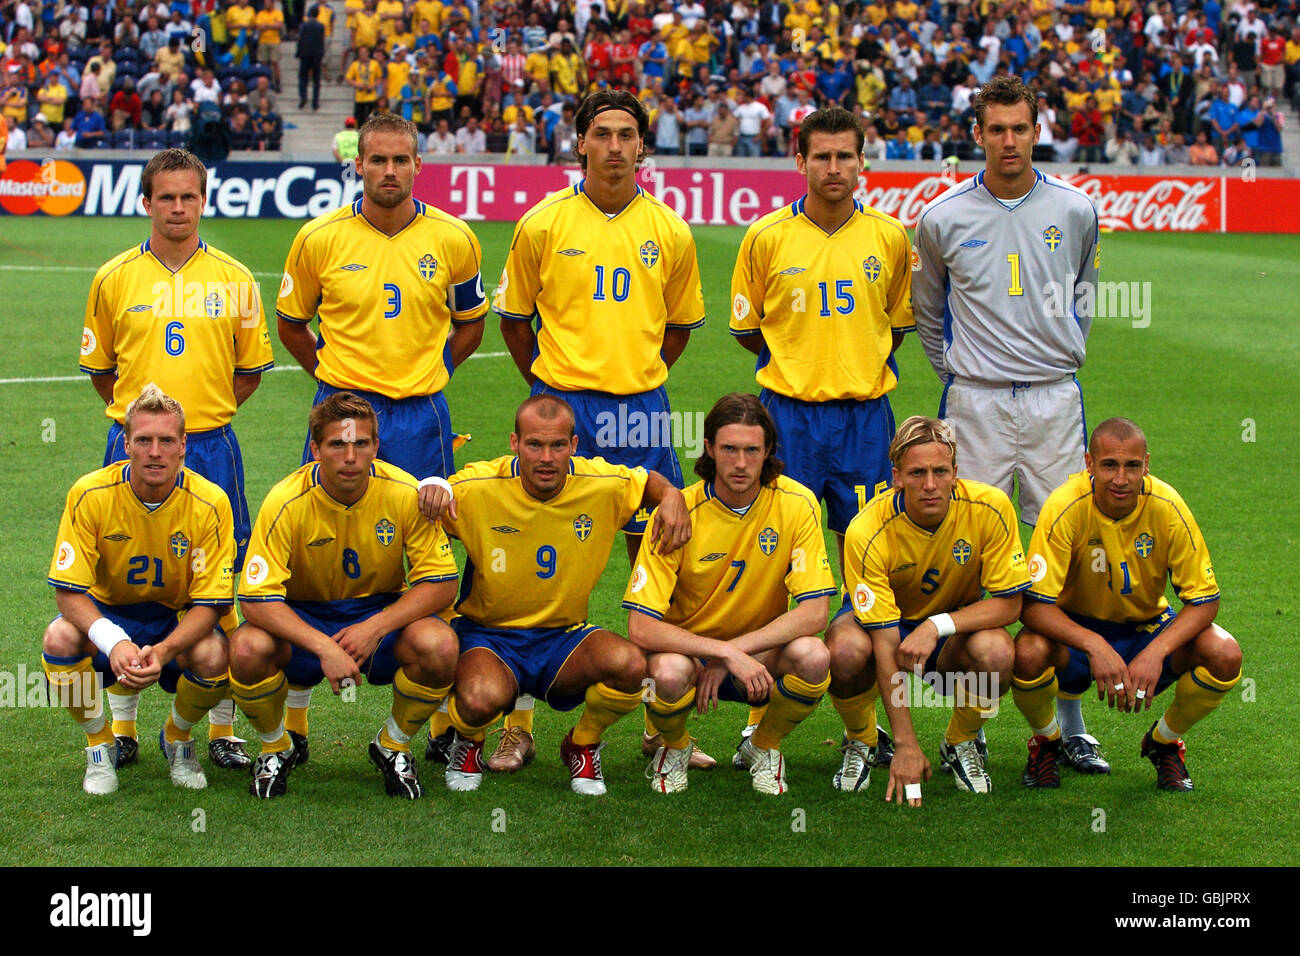 soccer-uefa-european-championship-2004-group-c-italy-v-sweden-GBJPRX.jpg